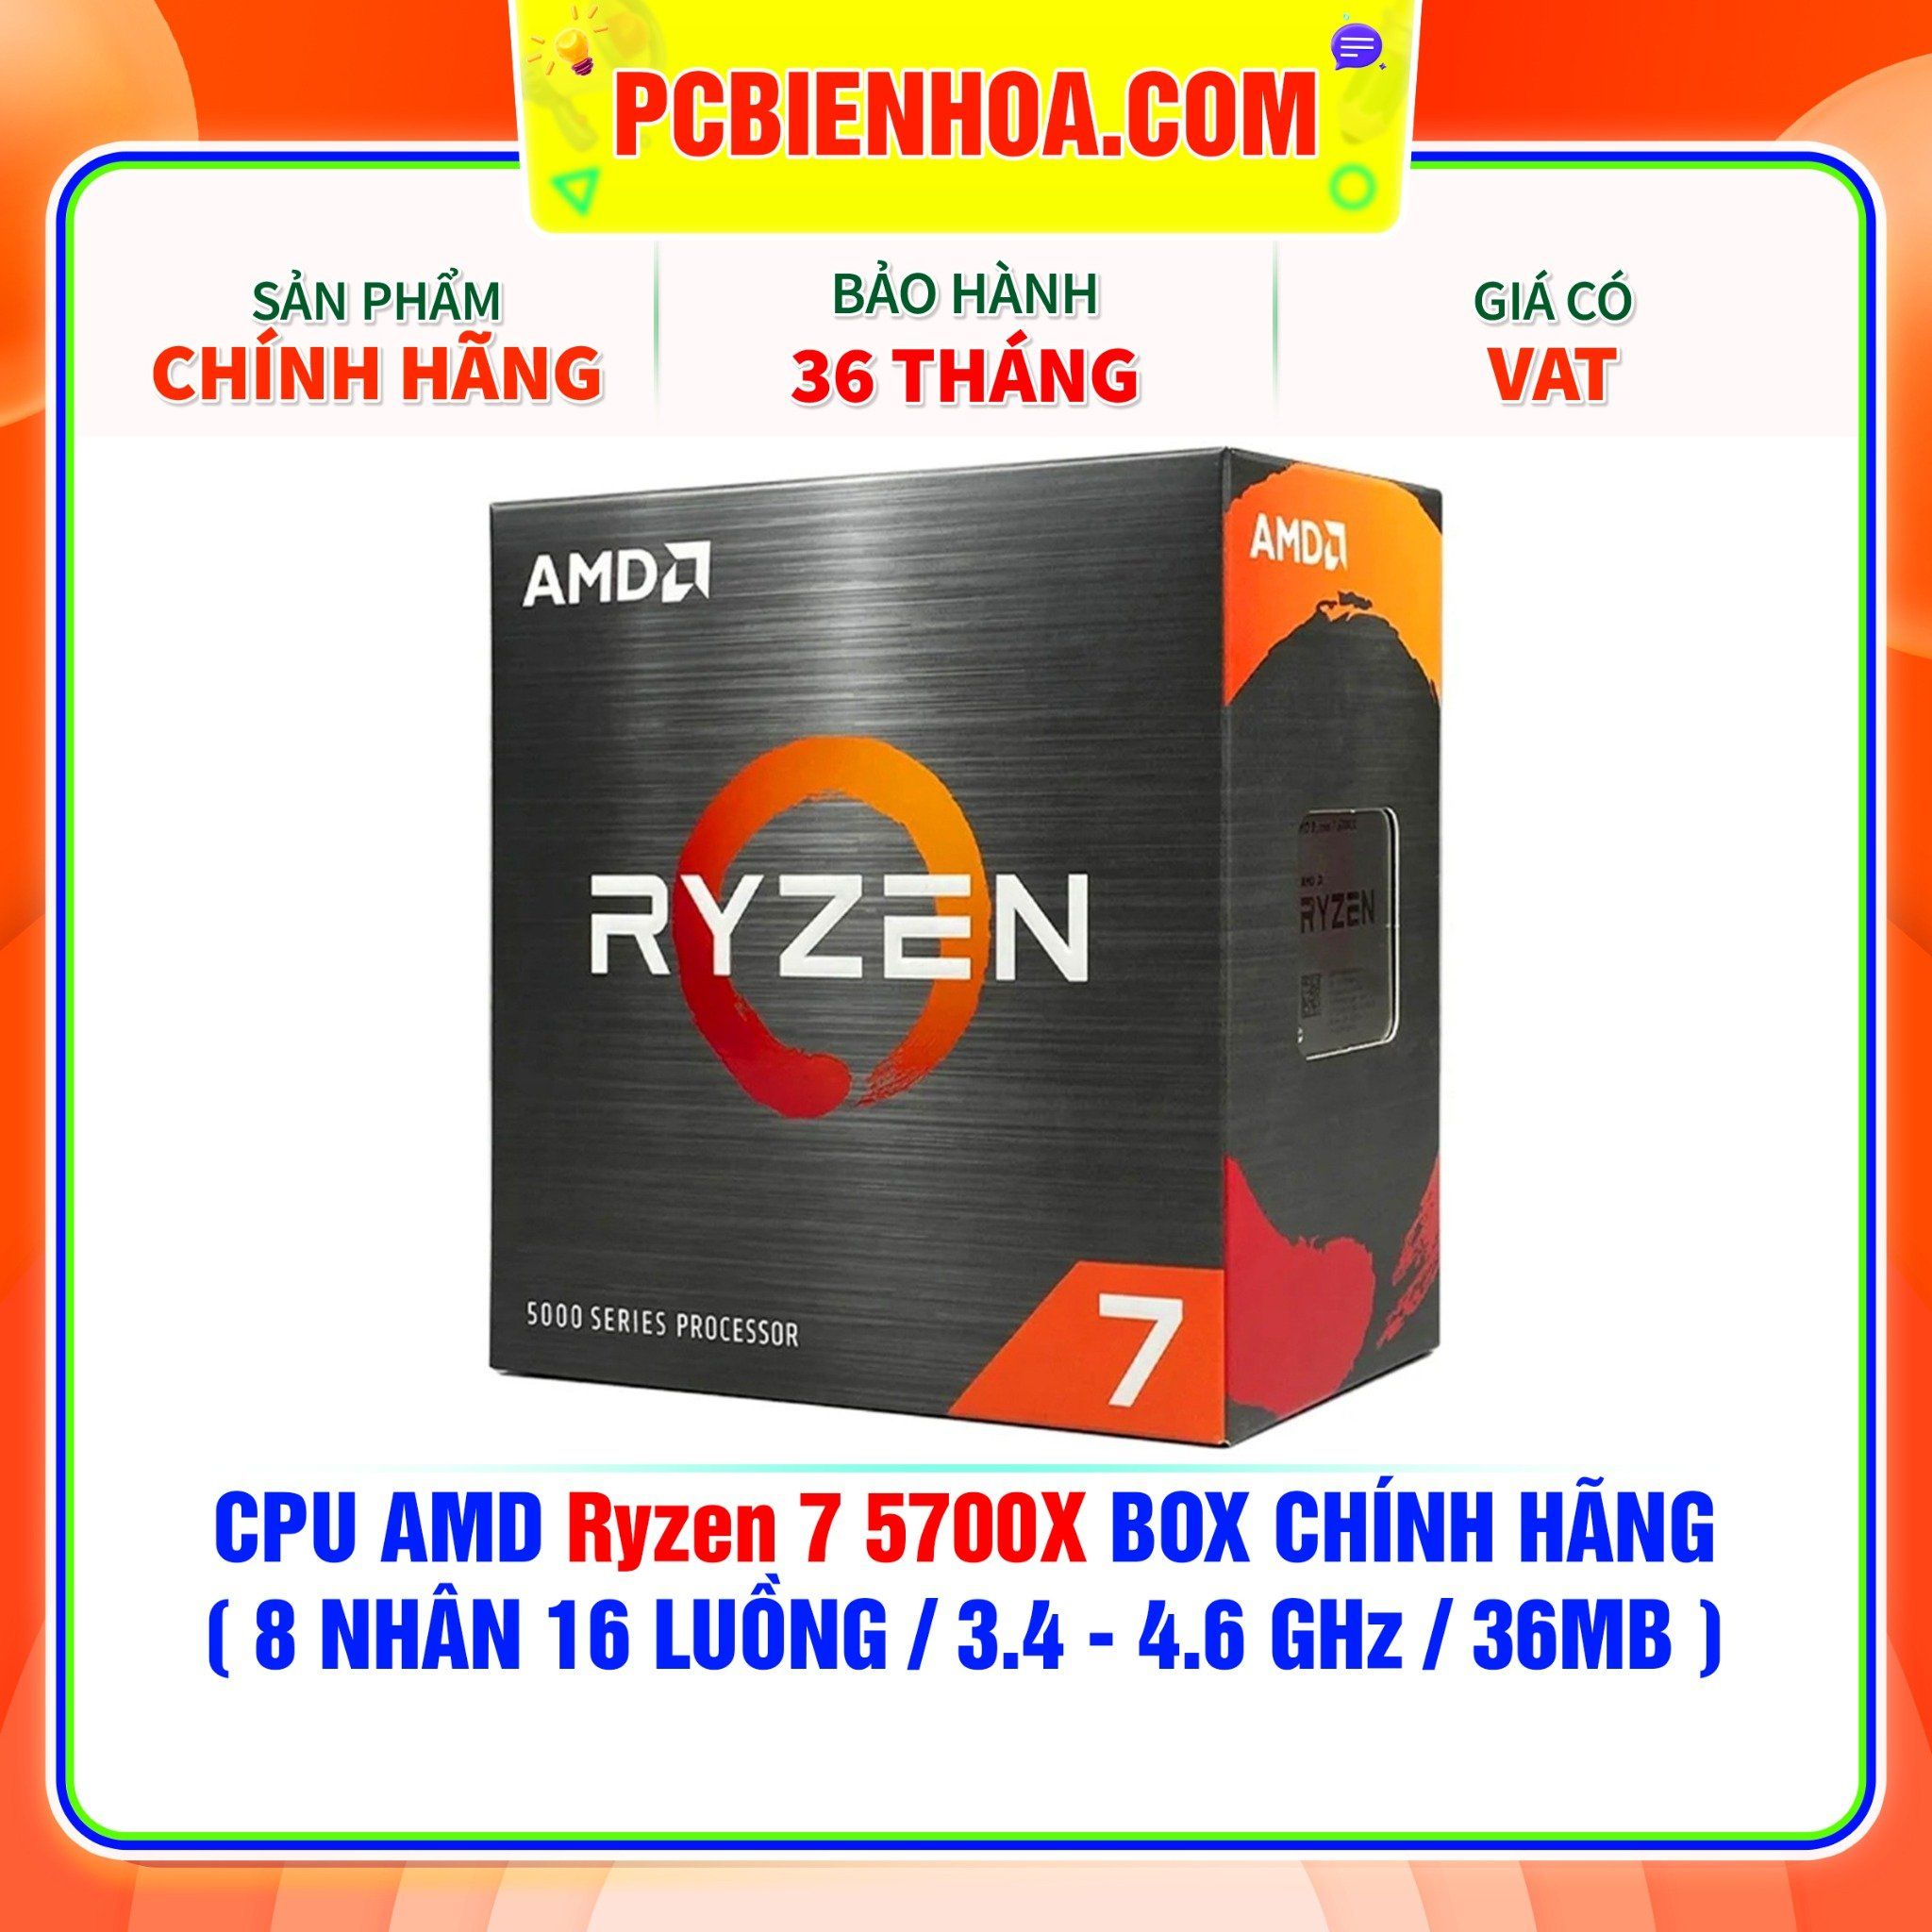  CPU AMD Ryzen 7 5700X BOX CHÍNH HÃNG ( 8 NHÂN 16 LUỒNG / 3.4 - 4.6 GHz / 36MB ) 